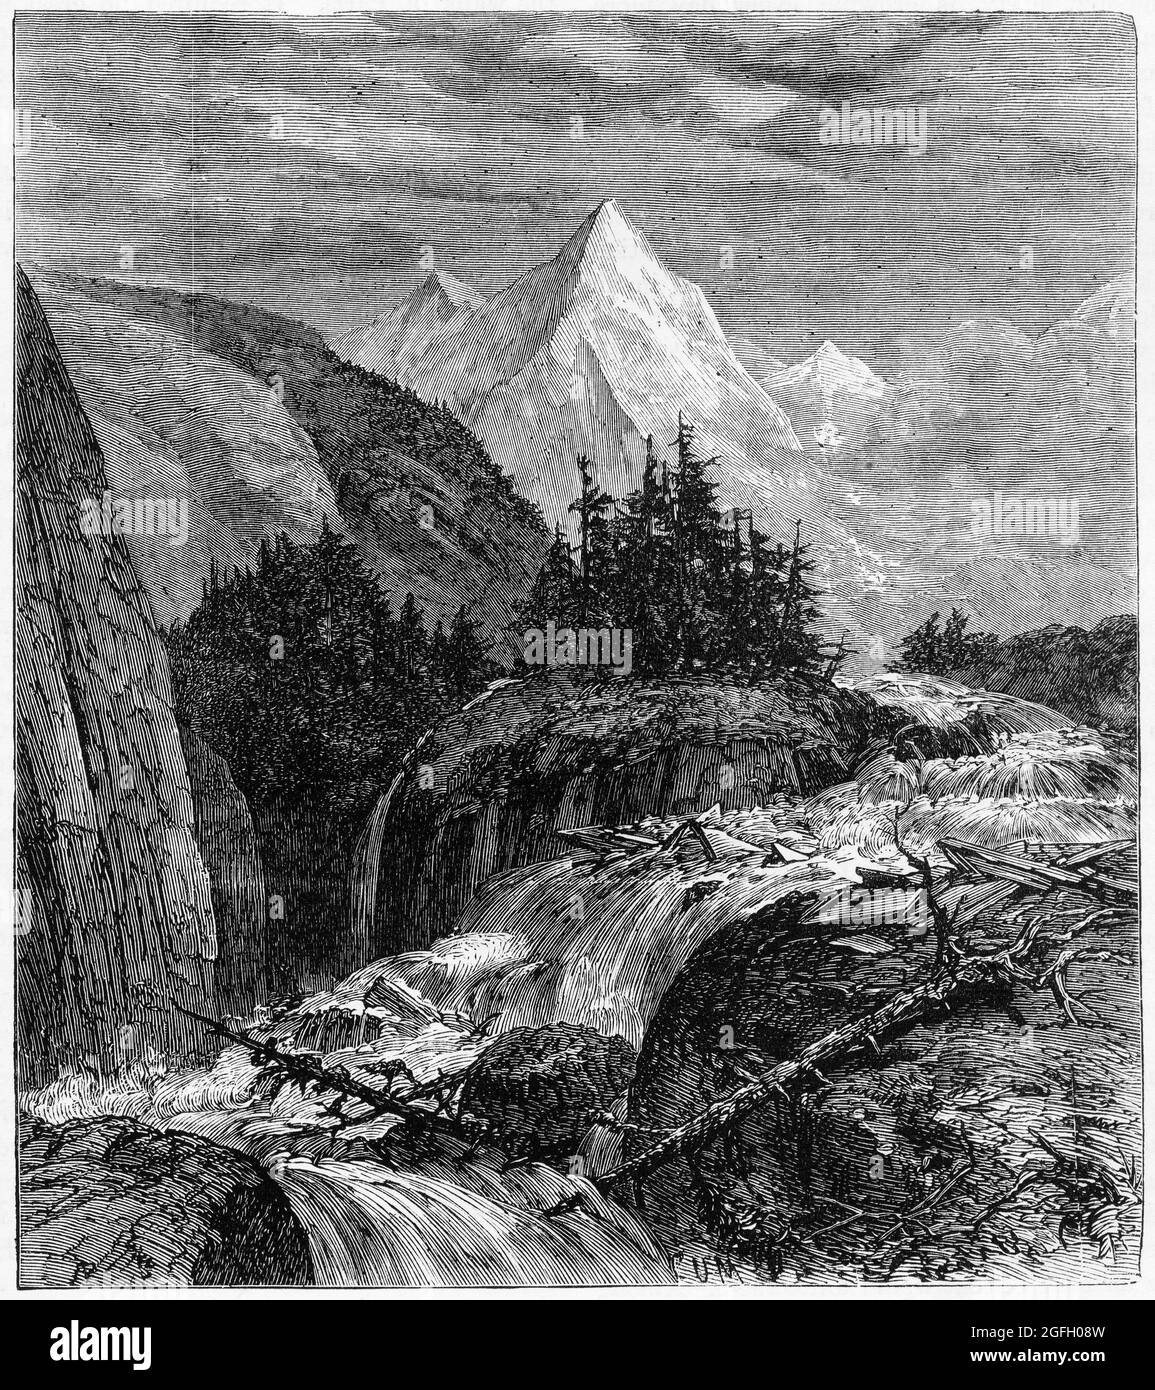 Gravure d'un torrent de montagne dans les alpes suisses à la fin des années 1800 Banque D'Images